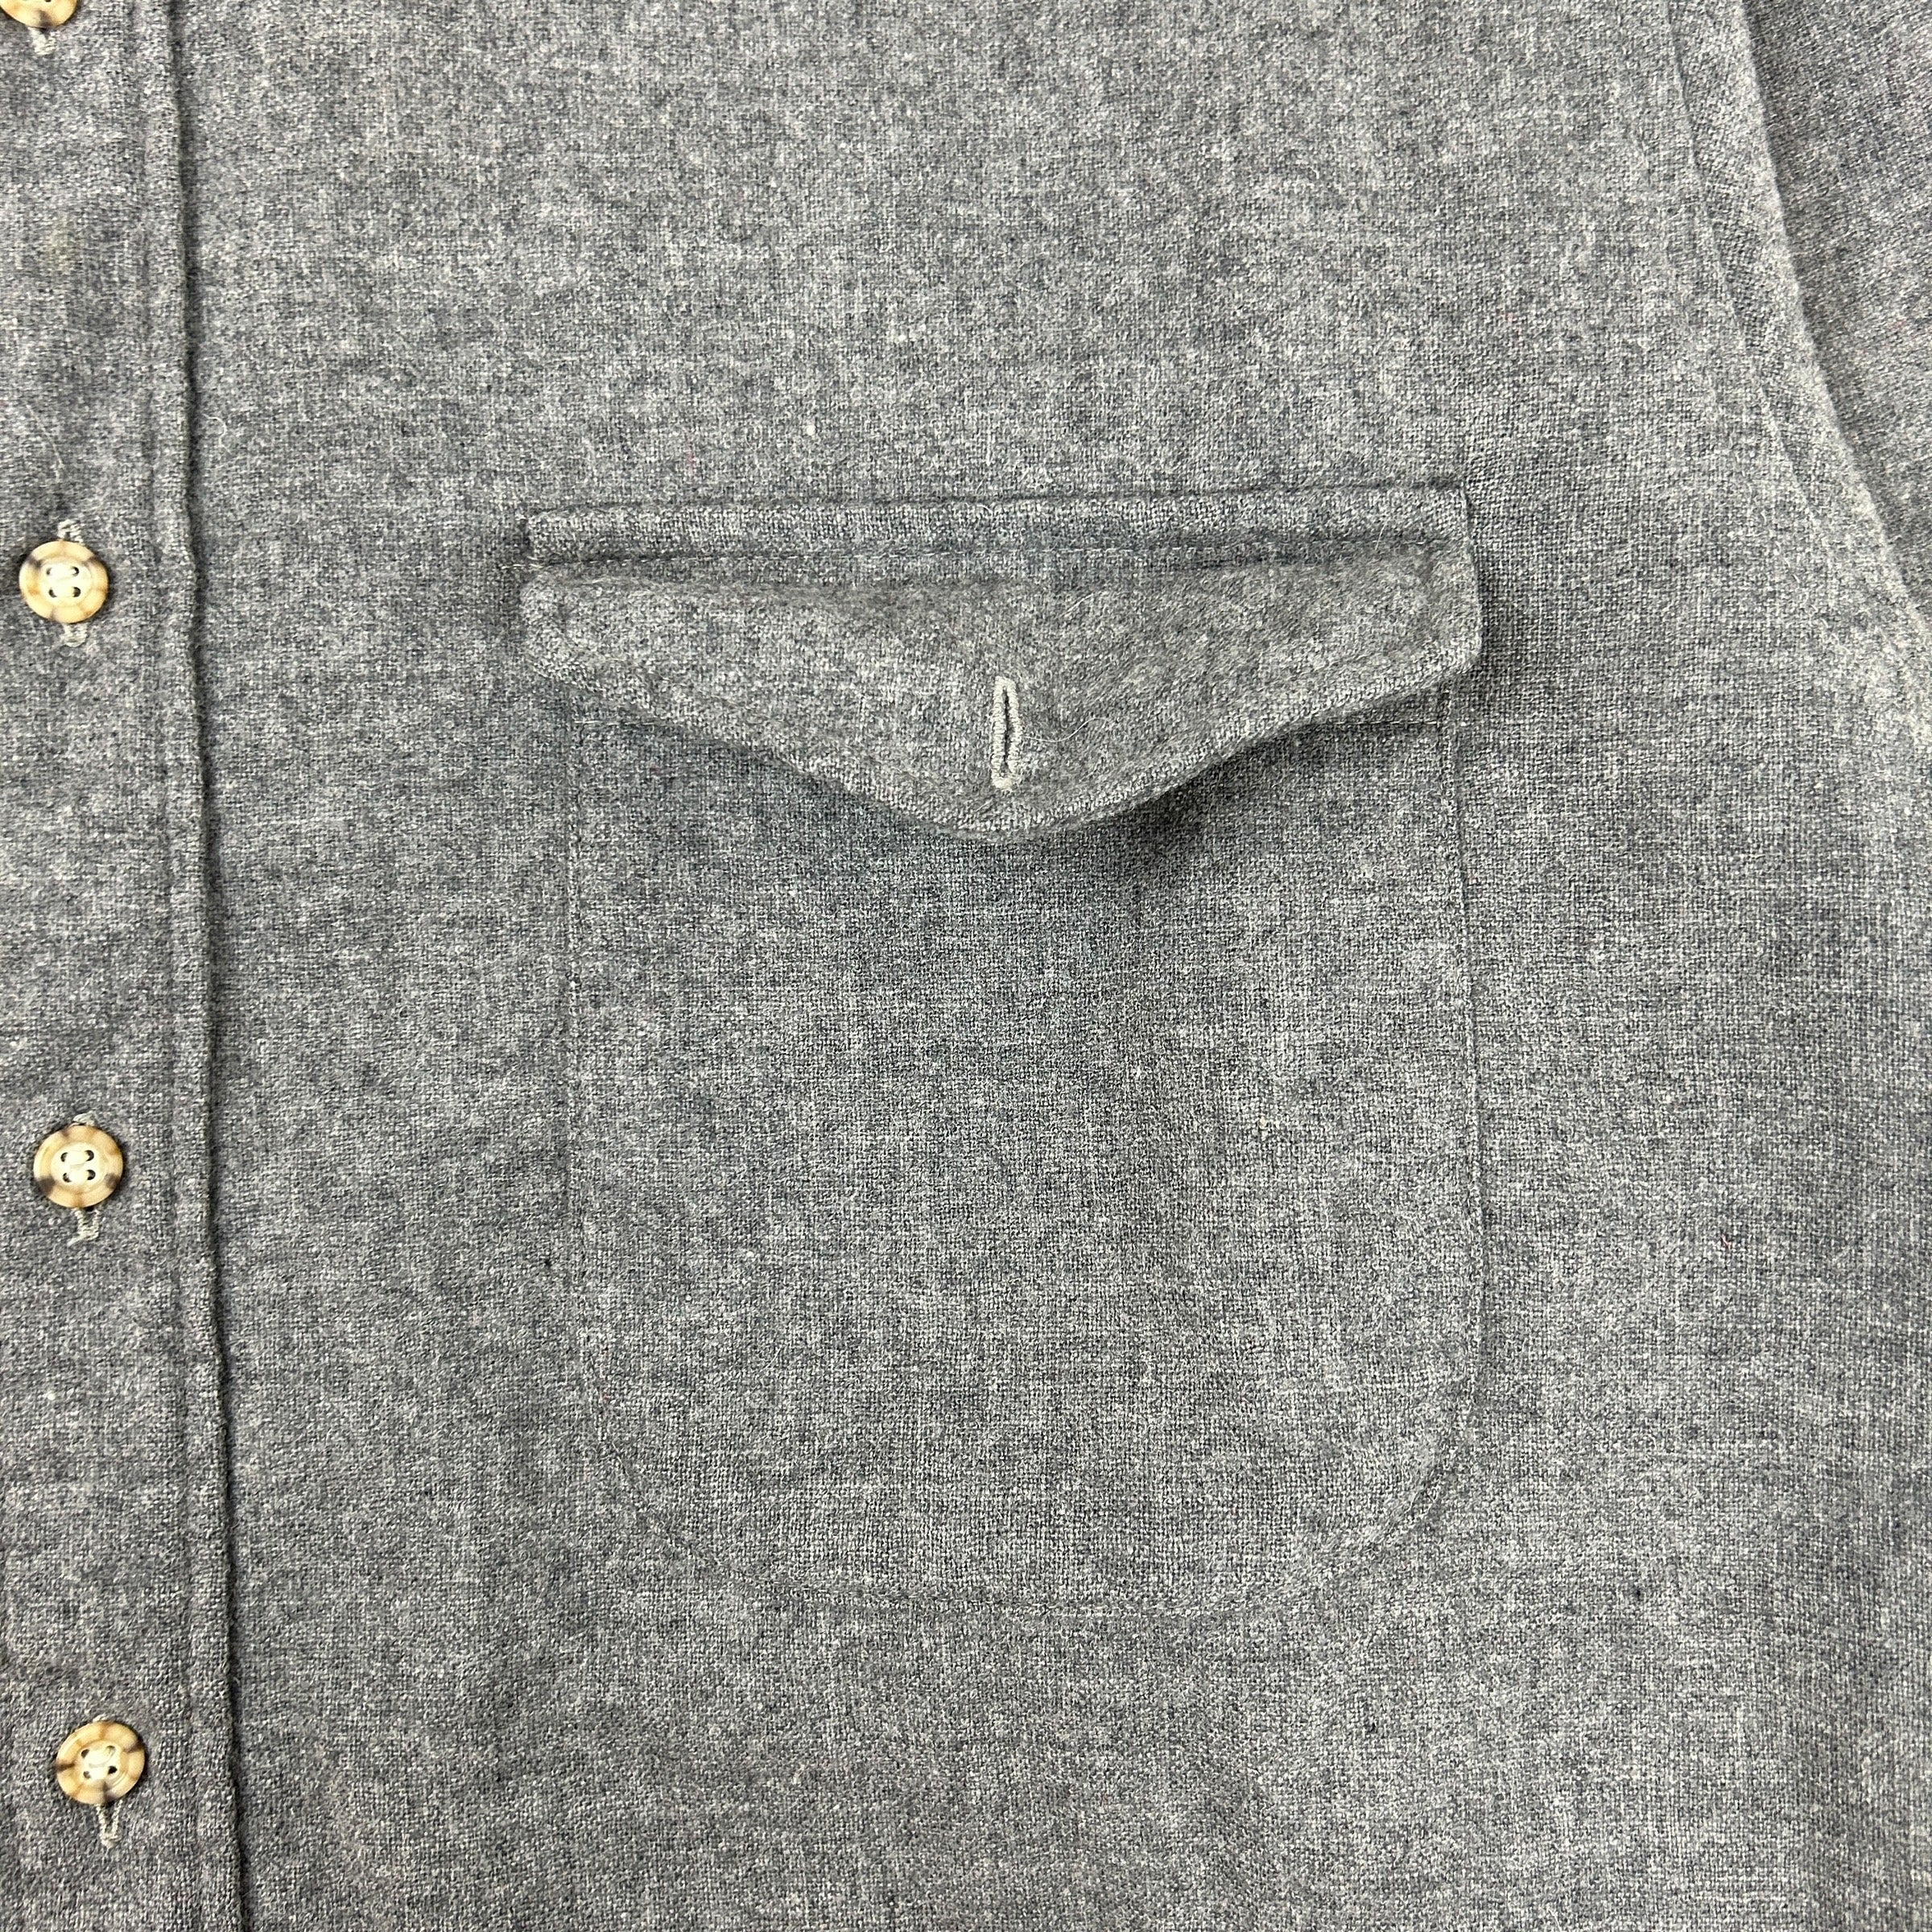 Vintage Pendleton Wool Button Up Grey